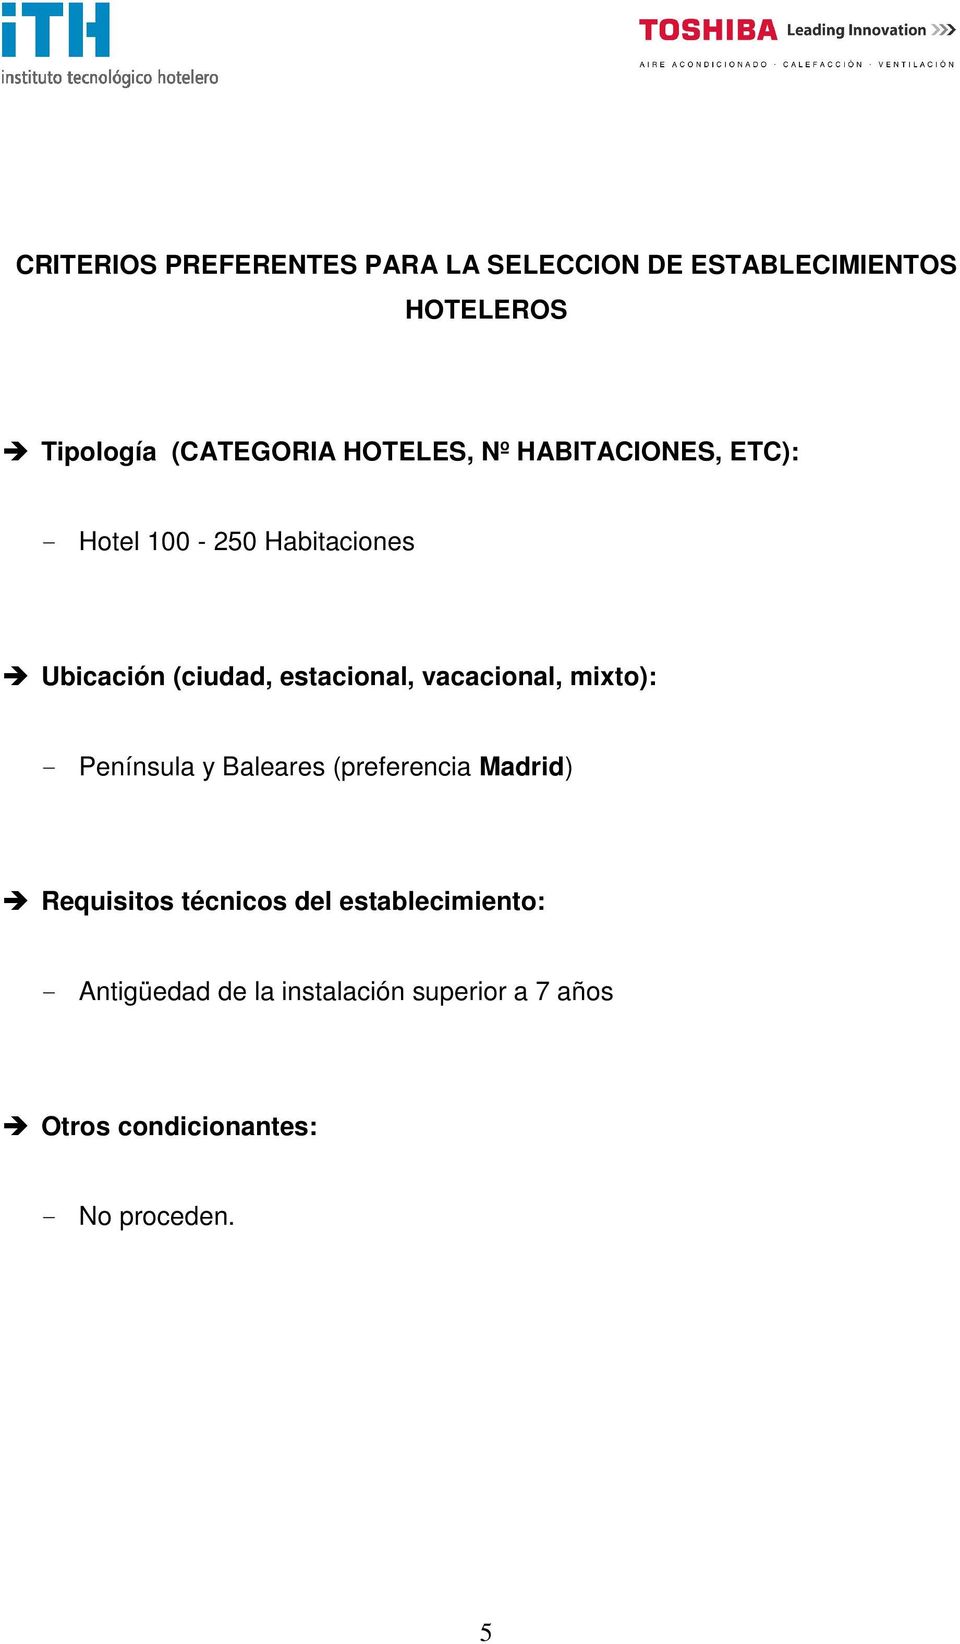 vacacional, mixto): - Península y Baleares (preferencia Madrid) Requisitos técnicos del